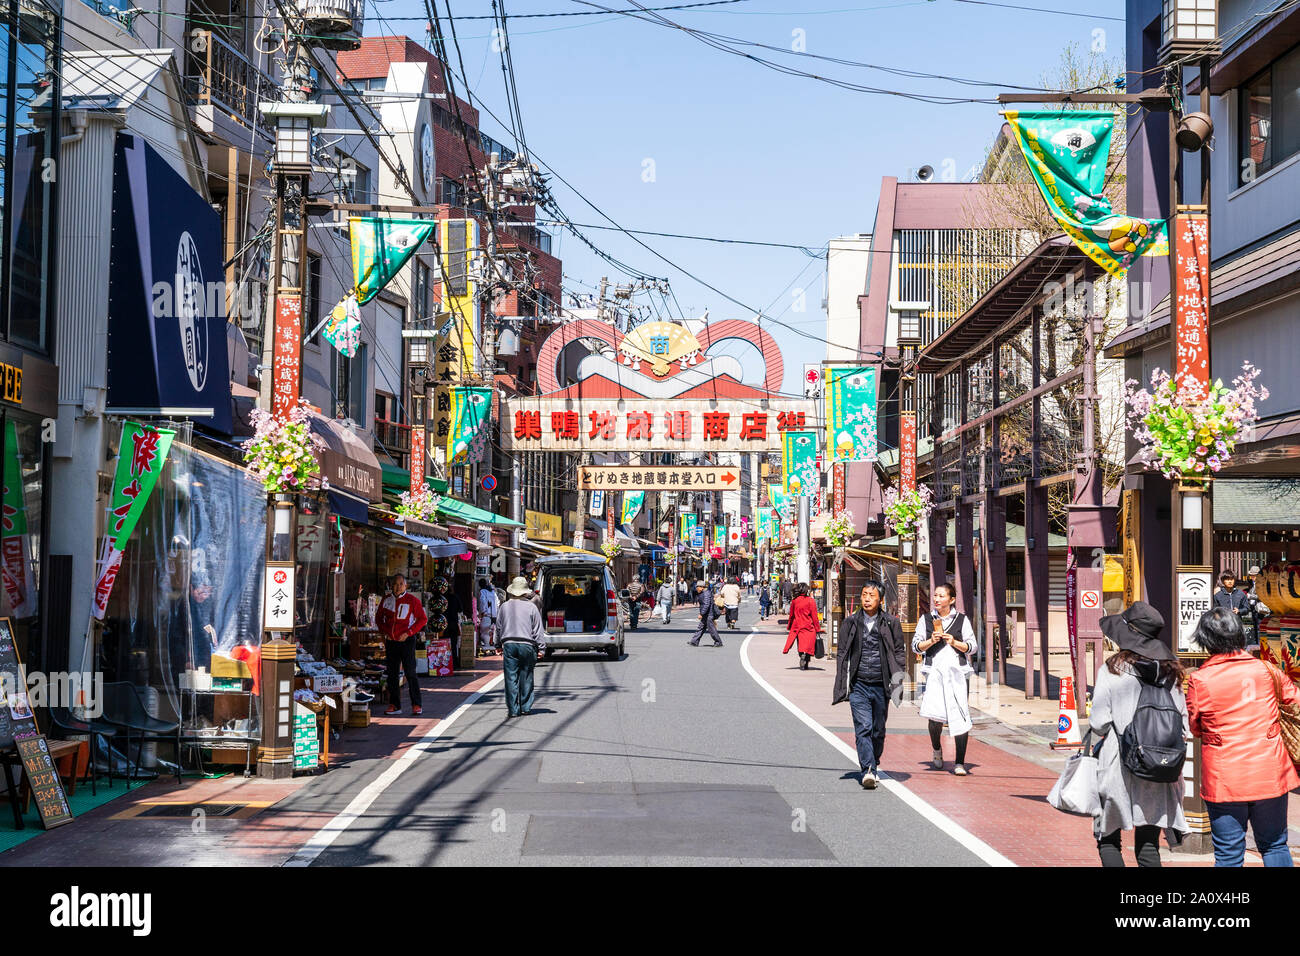 Vue de jour de 800 mètres le long de la célèbre rue commerçante Dori Jizo, connu sous le nom de "vieilles dames" à Harajuku, Tokyo ville Sugamo. Le printemps. Ciel bleu. Banque D'Images